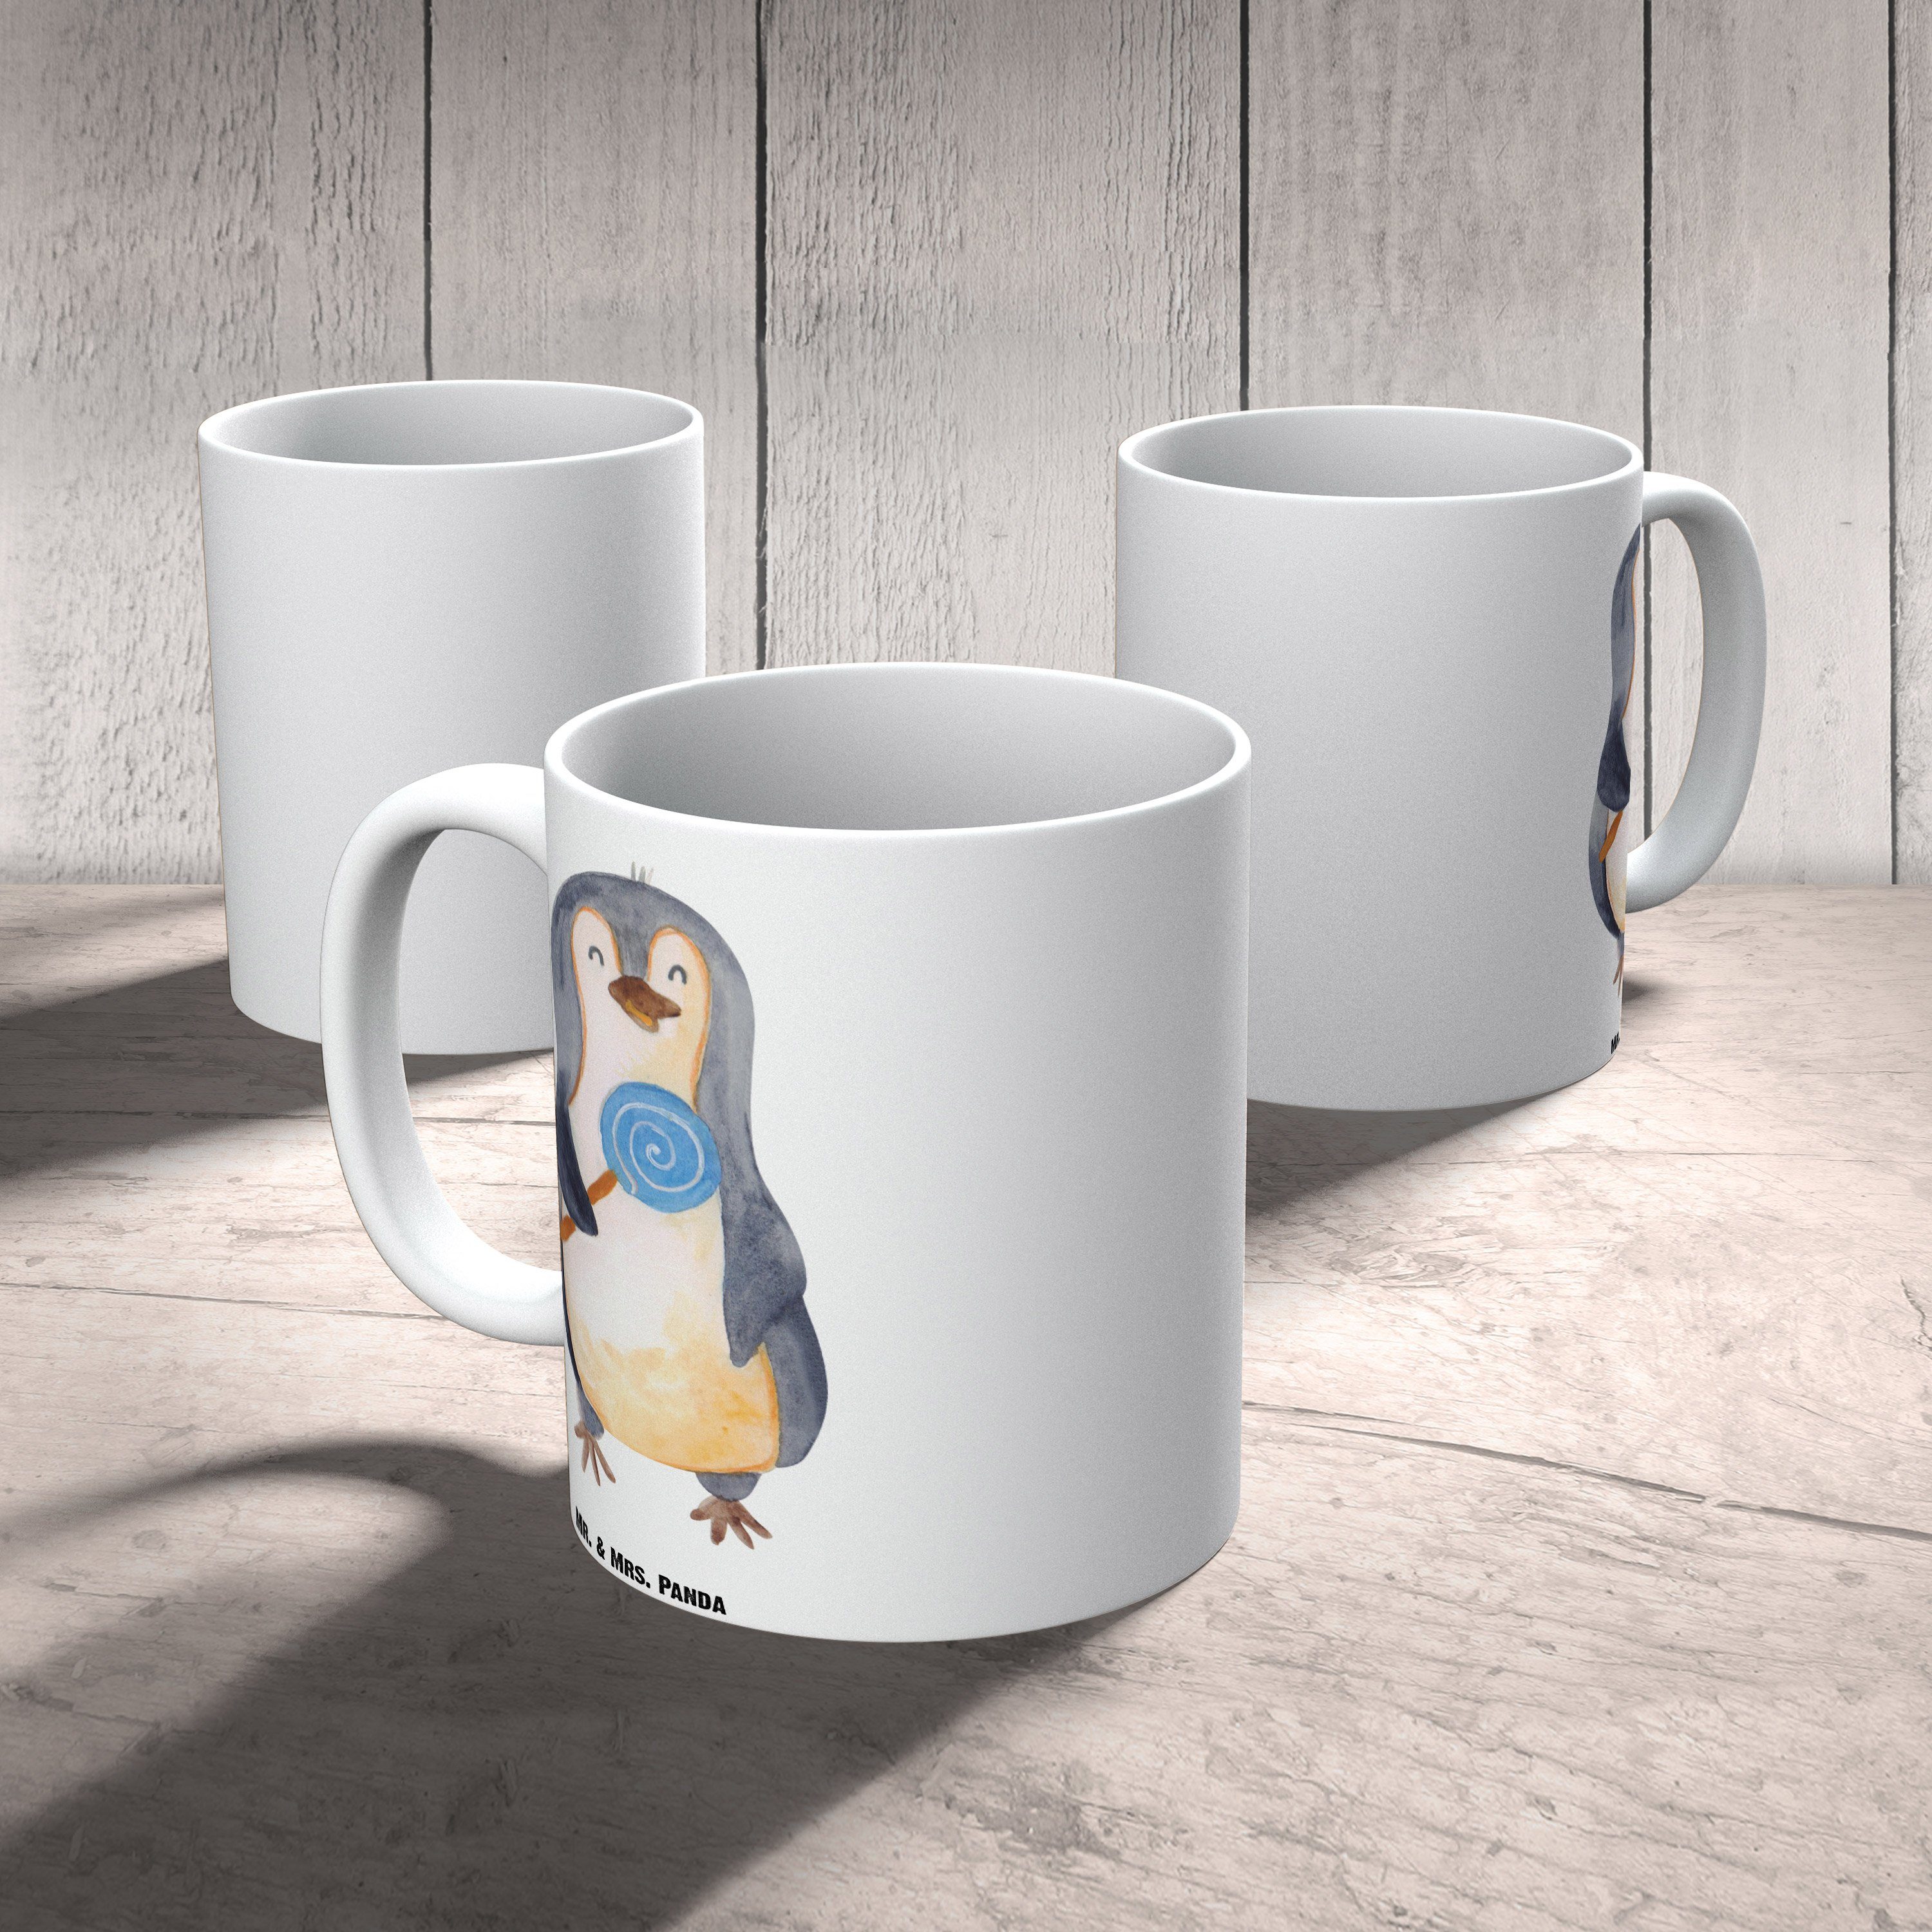 Tasse Teet, XL Tasse - Panda XL Geschenk, Mr. Mrs. Lolli XL Pinguin & Tasse, - Keramik spülmaschinenfest, Weiß